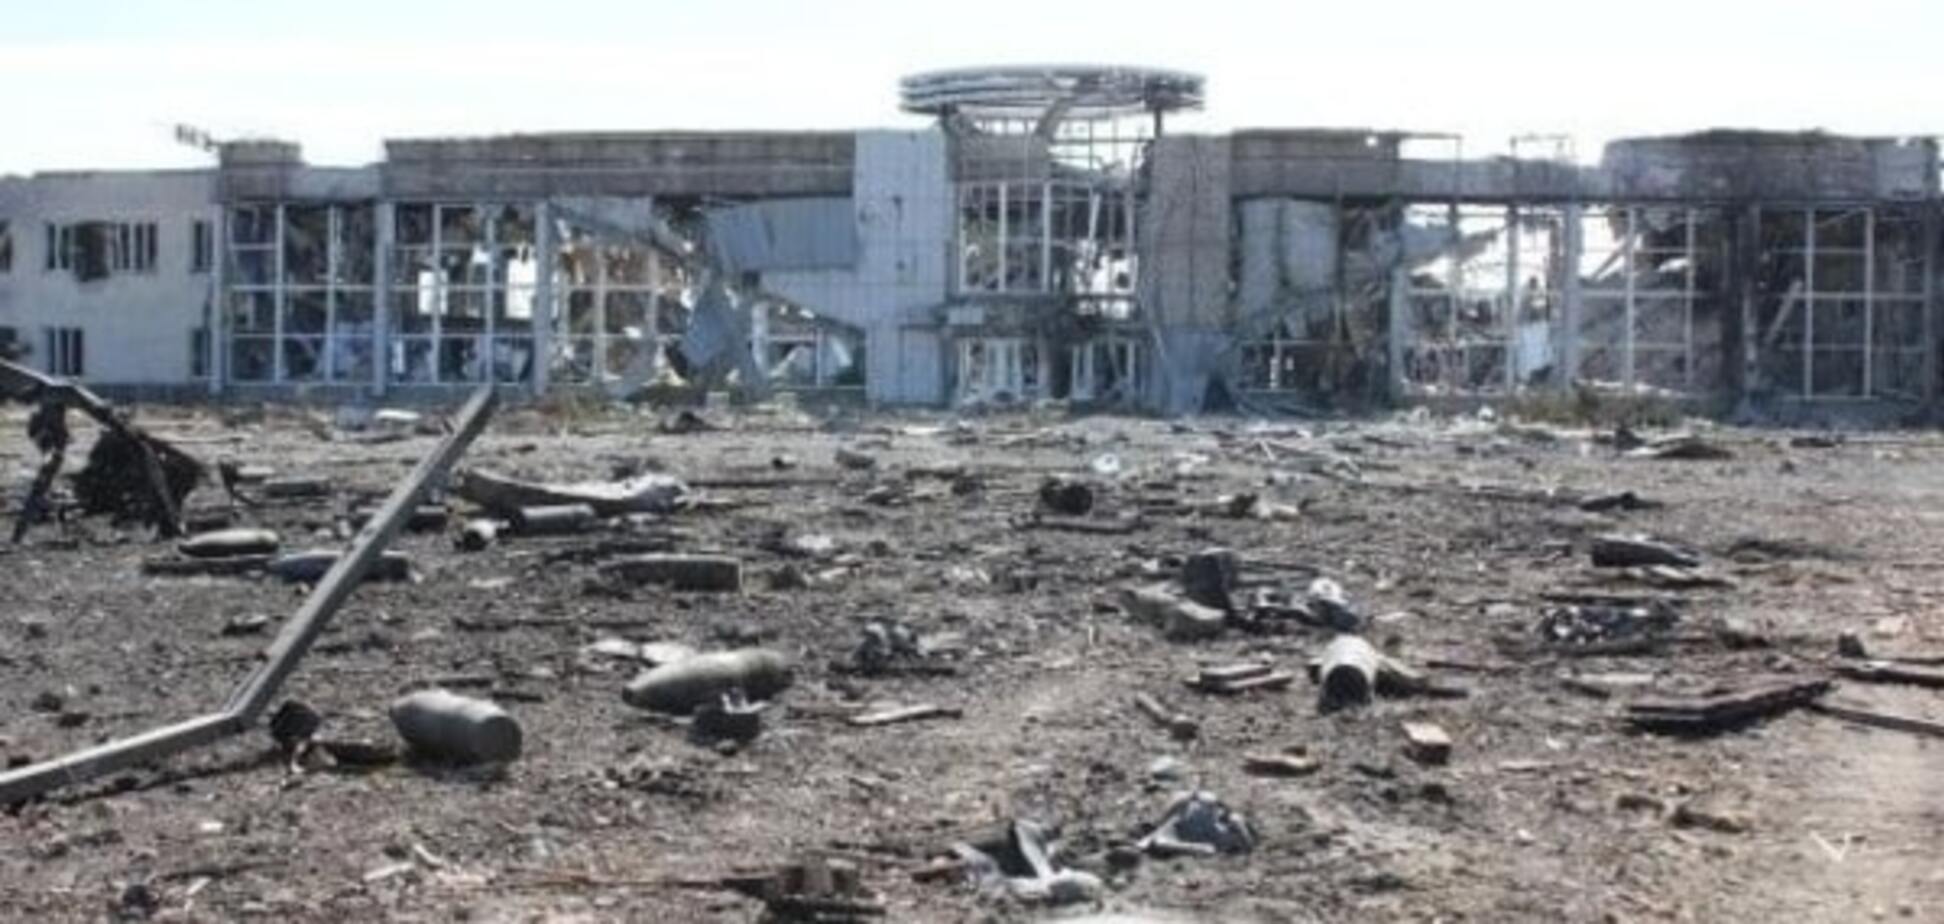 'Вчора було спокійно, сьогодні пекло': мешканці Донецька розповіли про вибухи з боку аеропорту